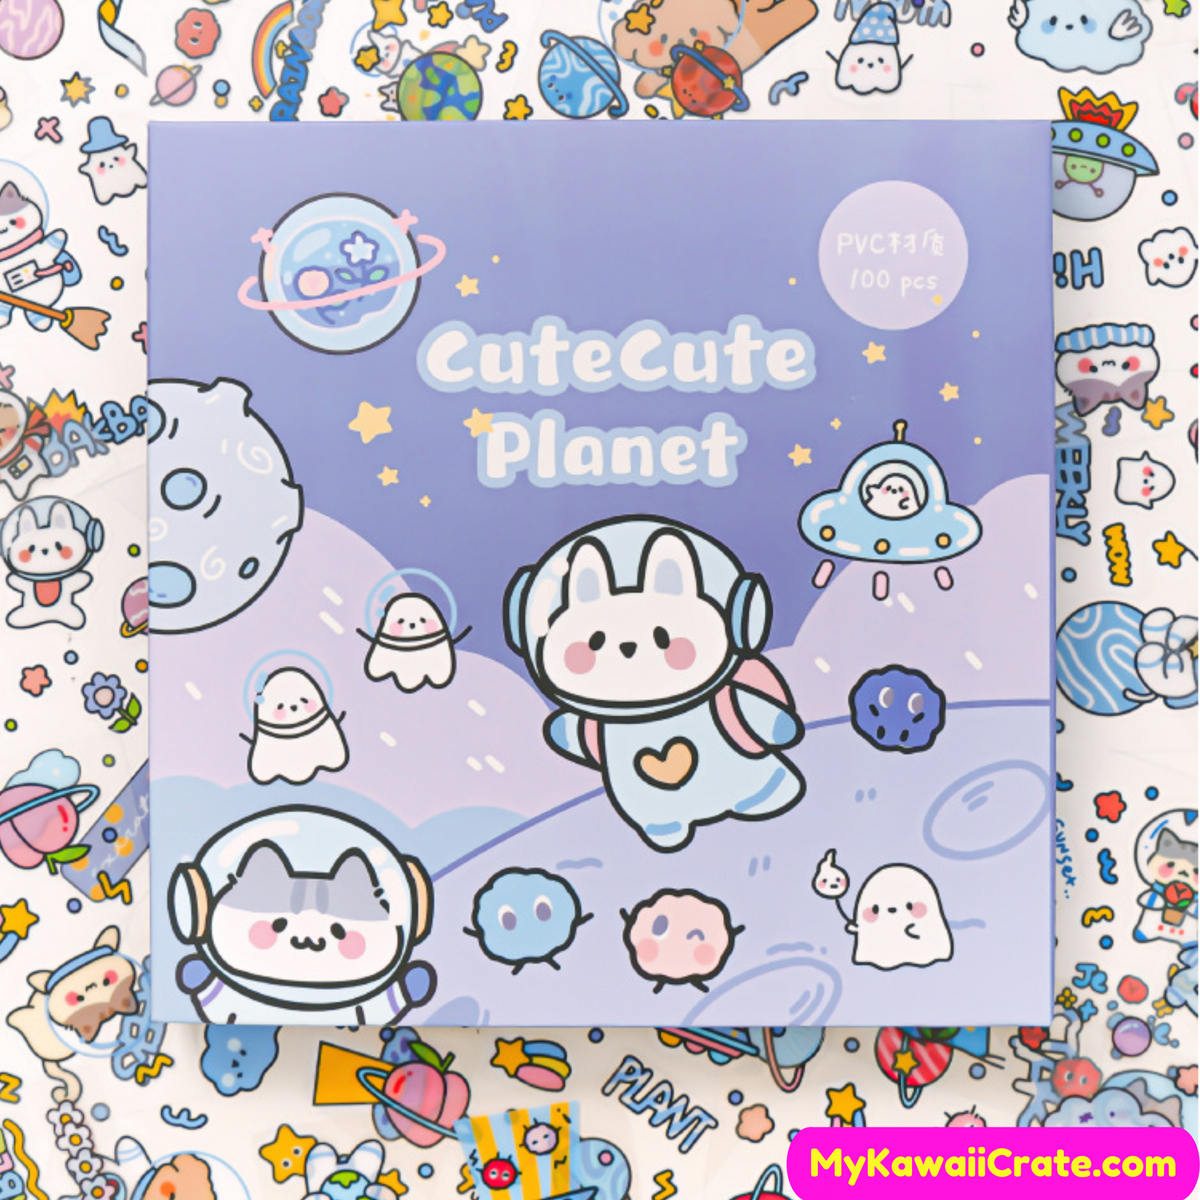 Cute Kawaii Stickers, Cute Sticker Sheets, Yellow Stickers, Pink Stickers,  Green Stickers, Sticker Sheet Set, Journal Sticker, Girl Stickers 